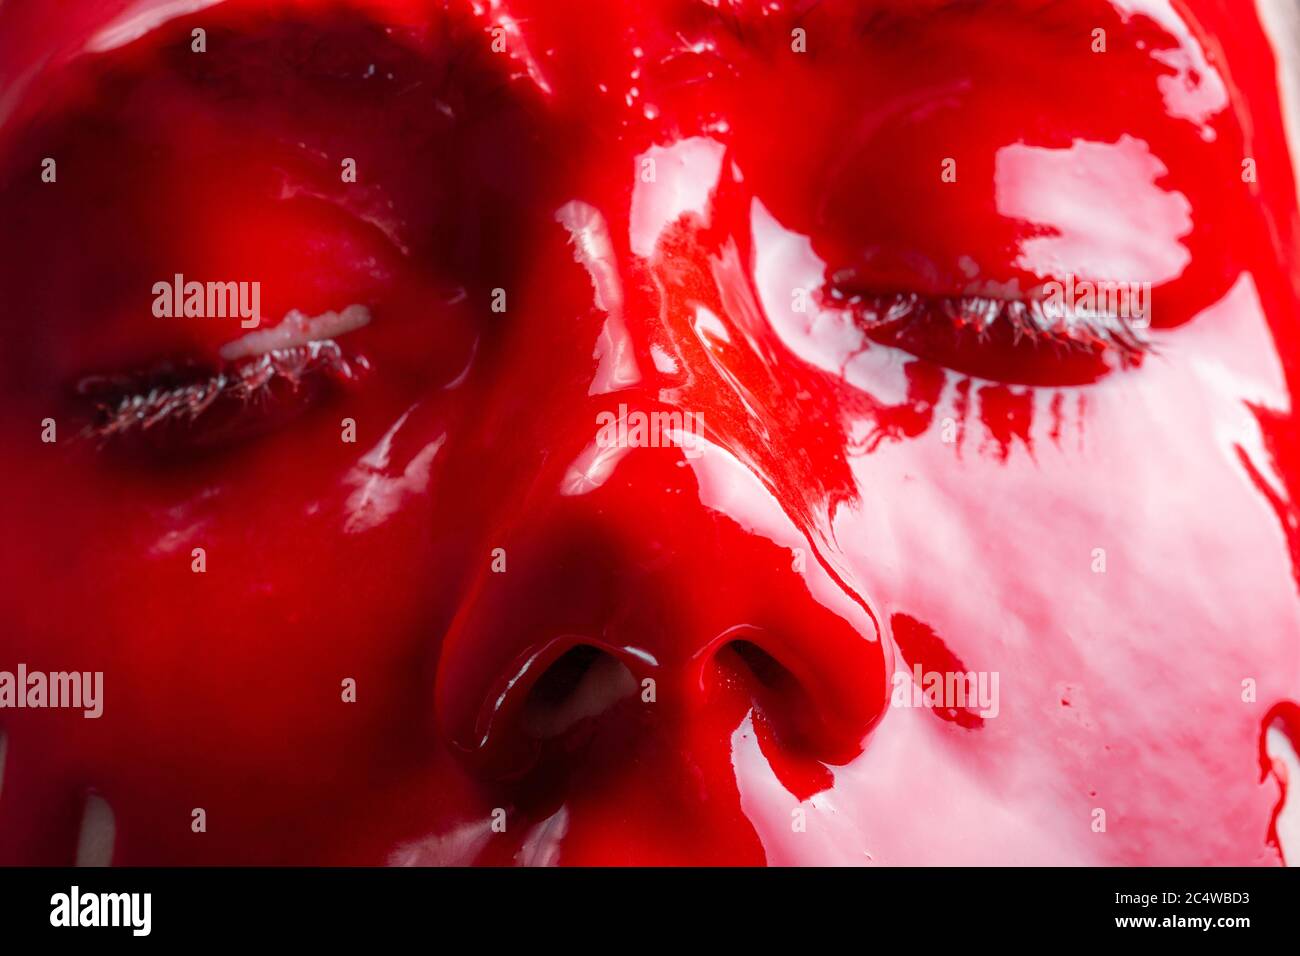 Immagine del volto di una femmina con vernice rossa a diffusione Foto Stock